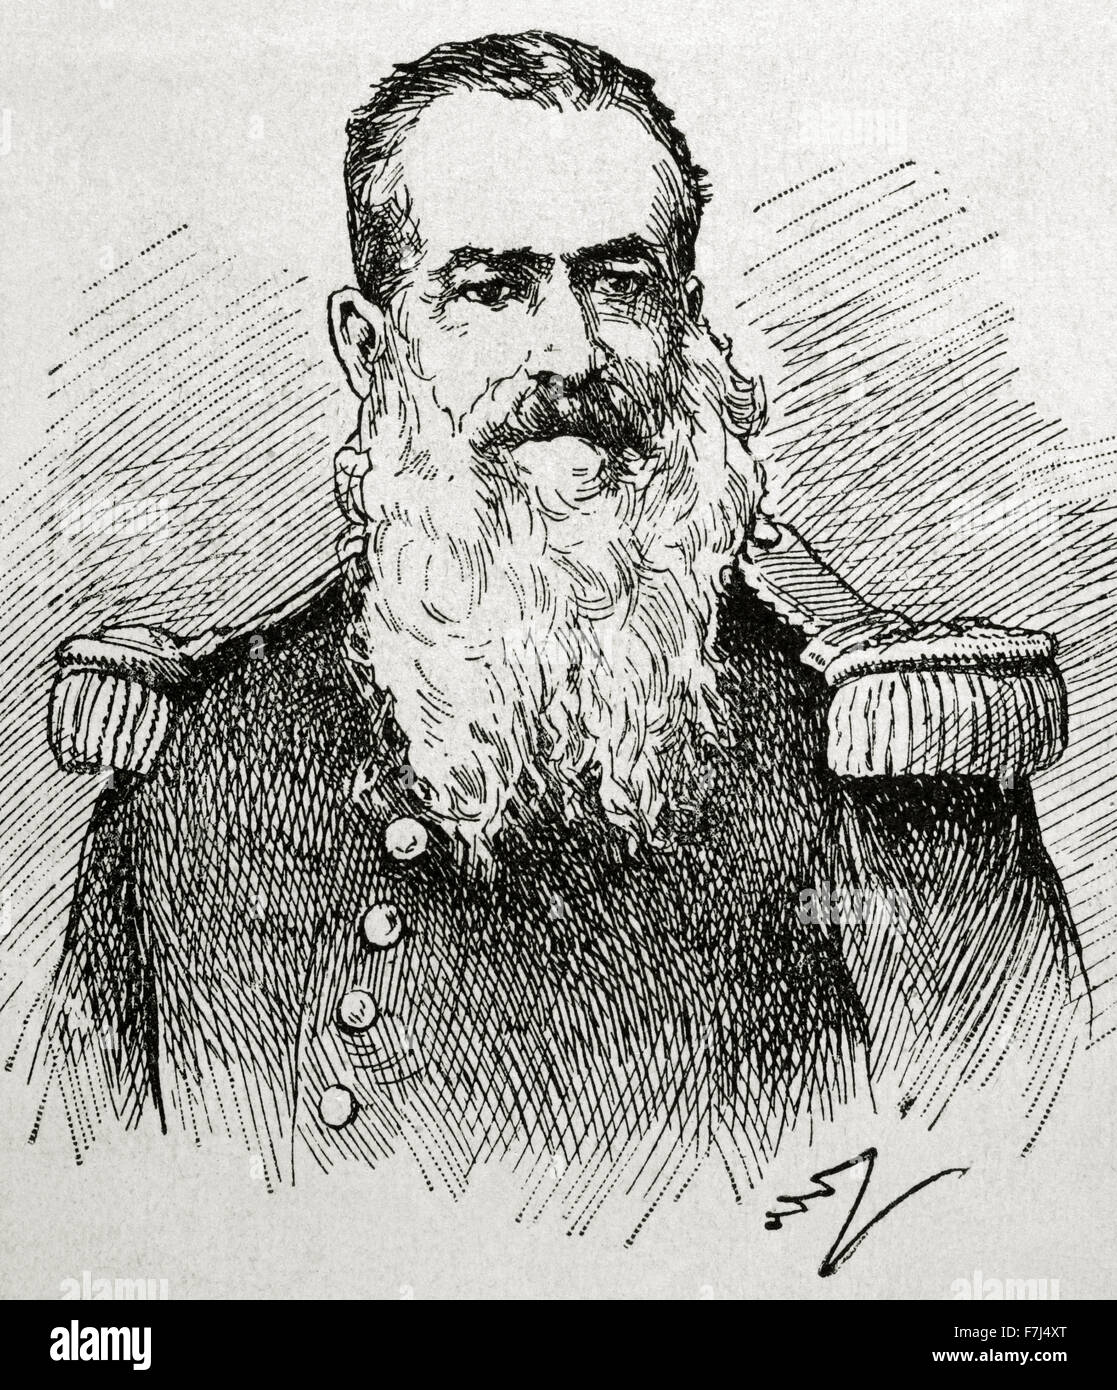 General José Calixto Mendizabal Aparicio (1837-1898). Guatemaltekischer Politiker. Minister für Krieg und Vice-Präsident von Guatemala. Porträt. Gravur. Stockfoto